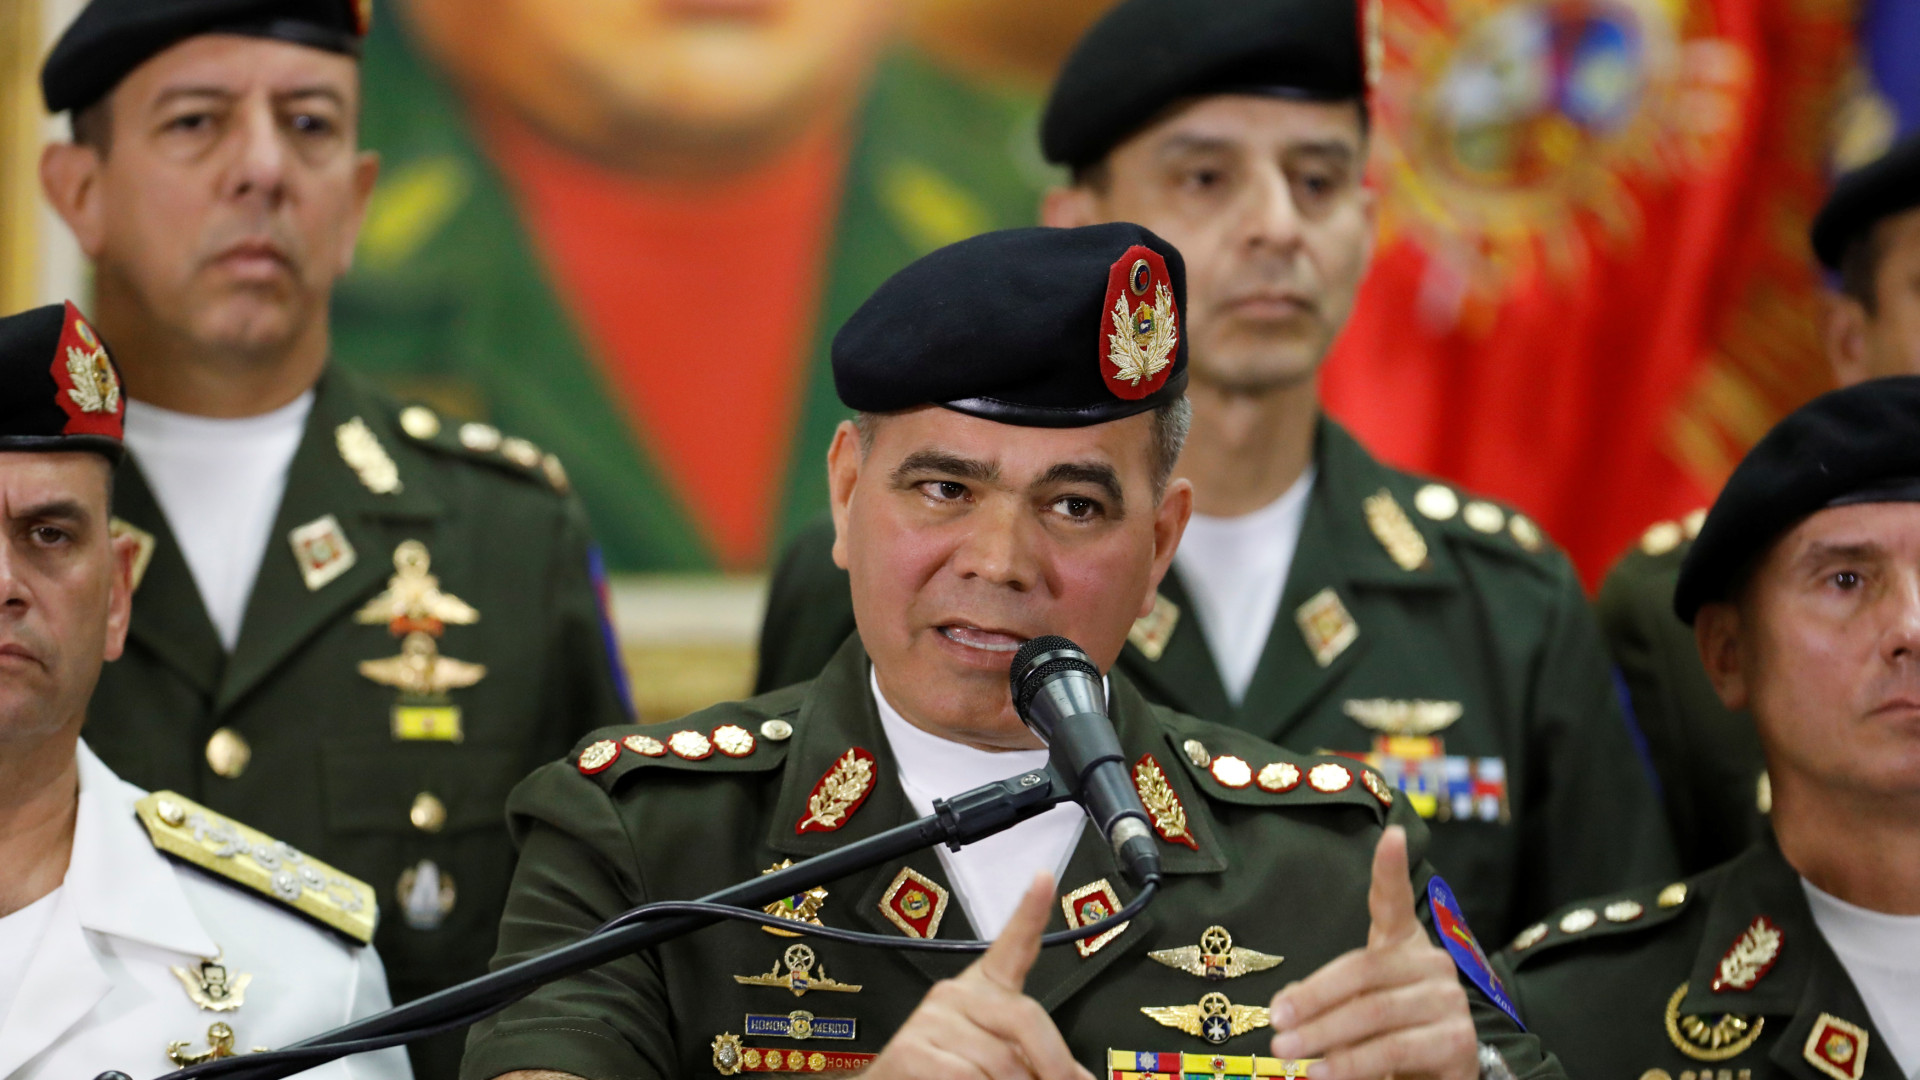 "As armas estão prontas para defender" Maduro diz ministro da Defesa